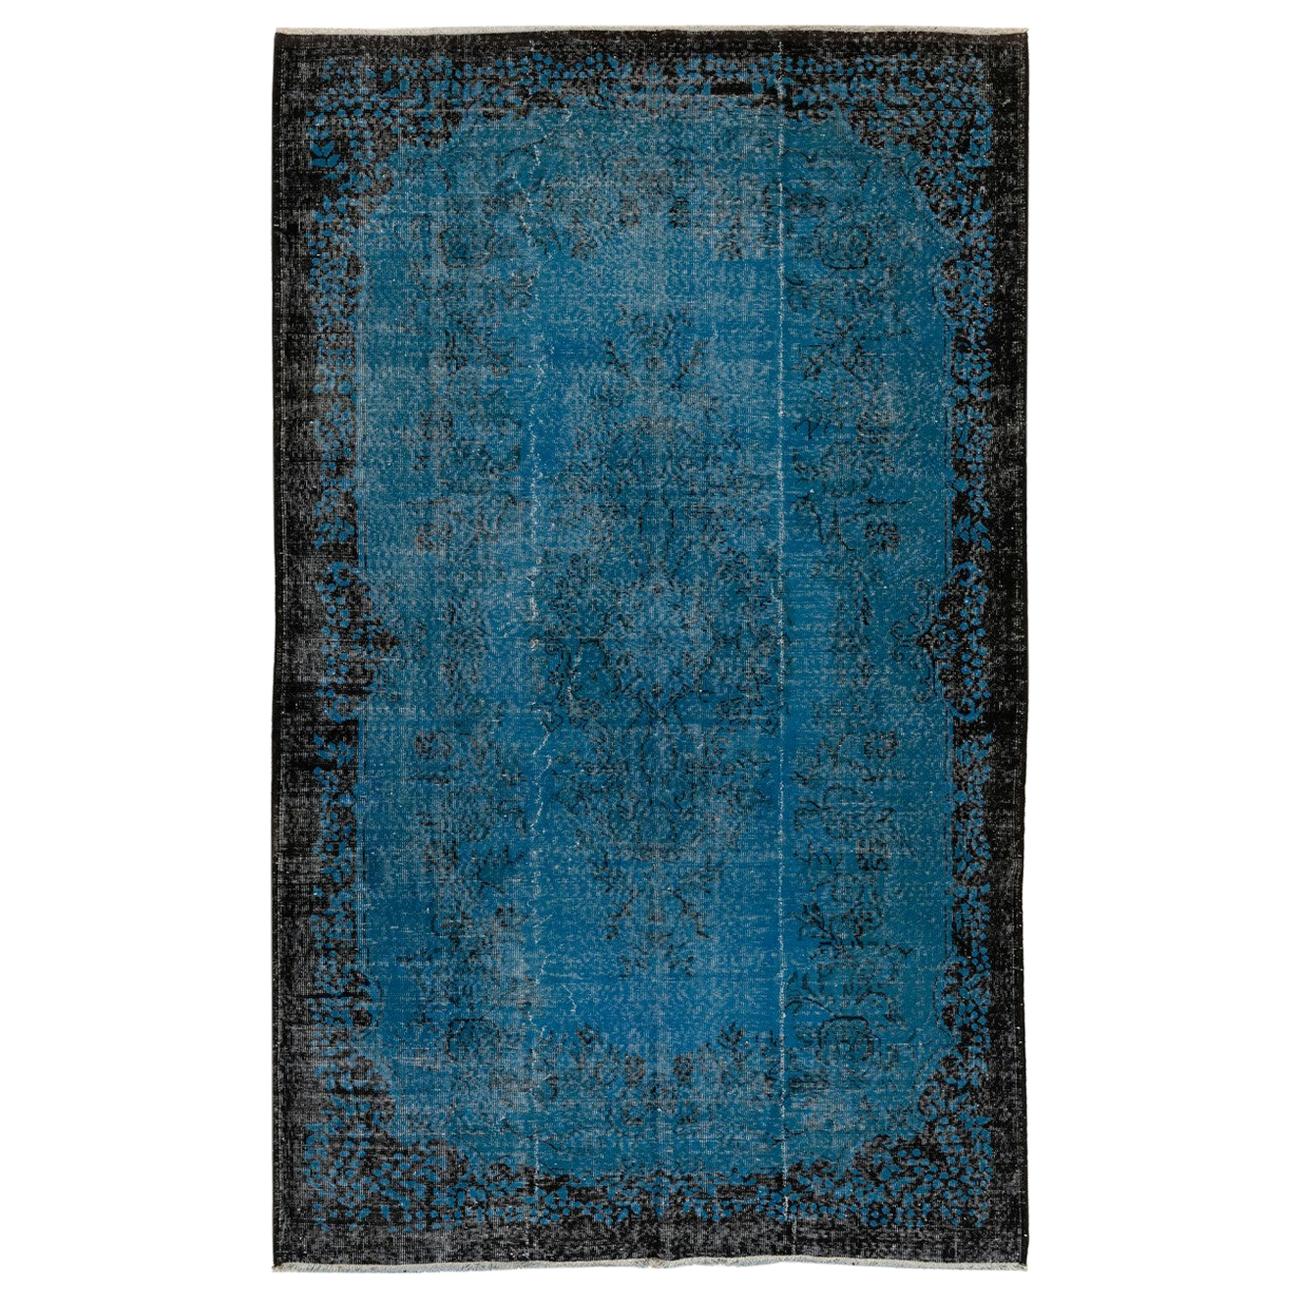 6.2x9.4 ft Indigo Blue Vintage Area Rug, Hand-Knotted Baroque Design Carpet For Sale